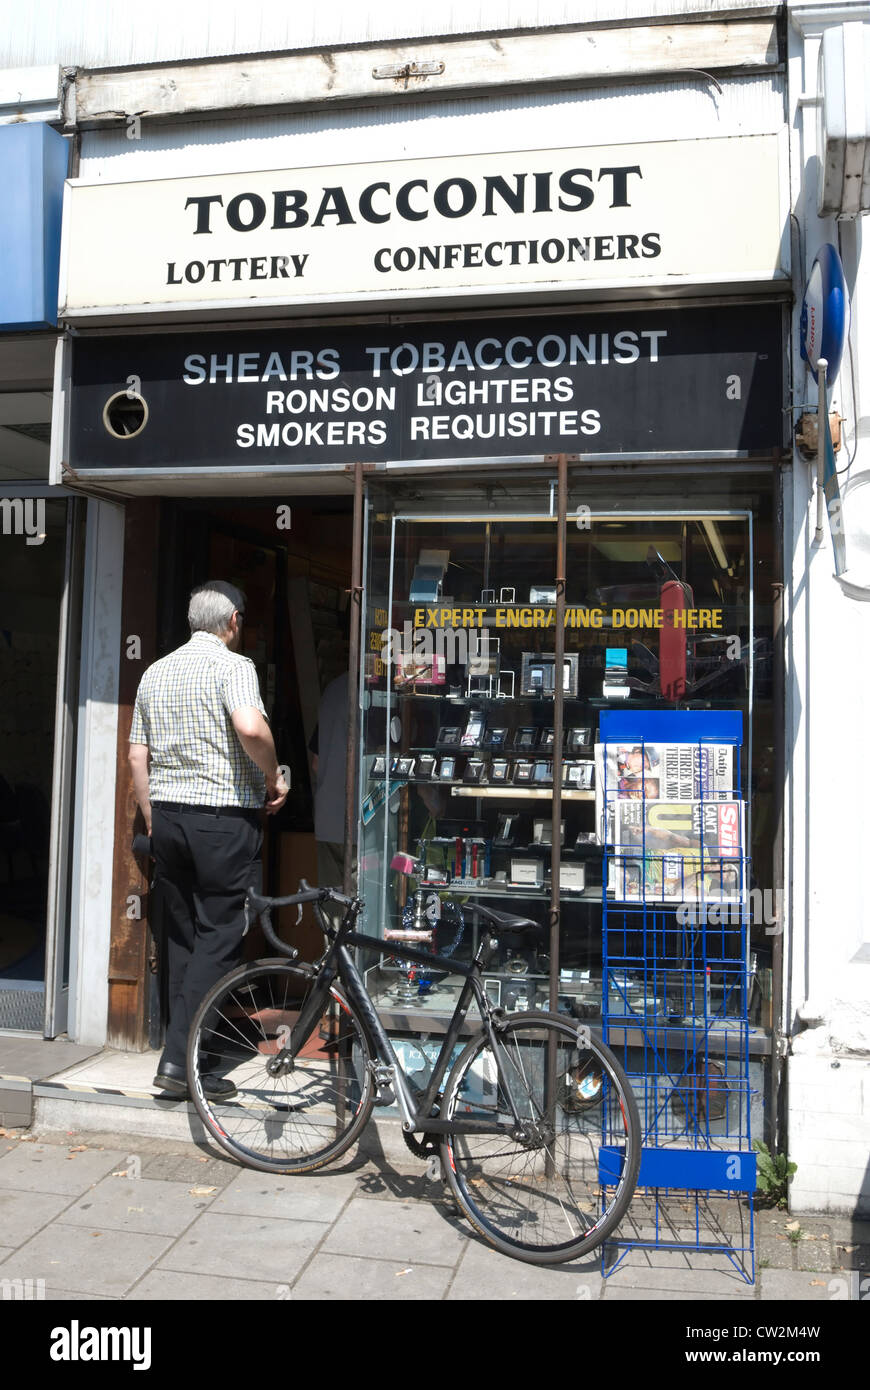 L'homme aux cheveux gris entrant dans un magasin de tabac, Chiswick, Londres, Angleterre Banque D'Images